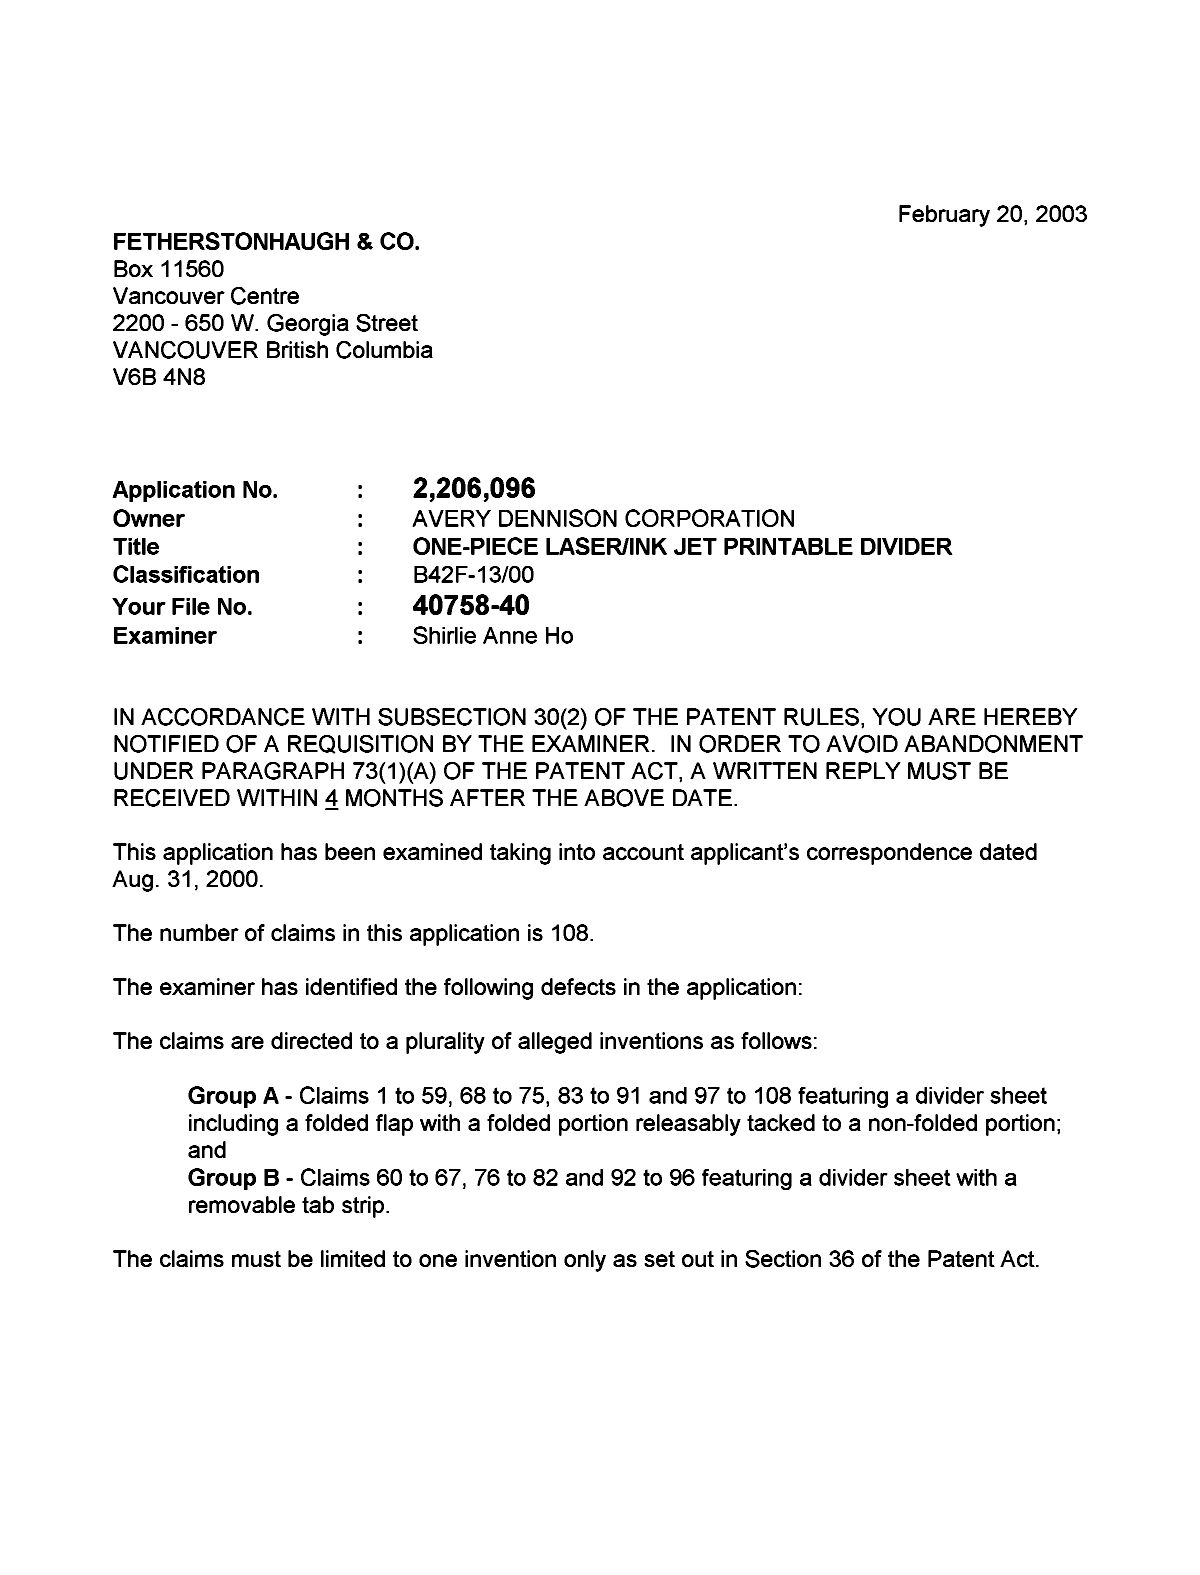 Document de brevet canadien 2206096. Poursuite-Amendment 20030220. Image 1 de 3